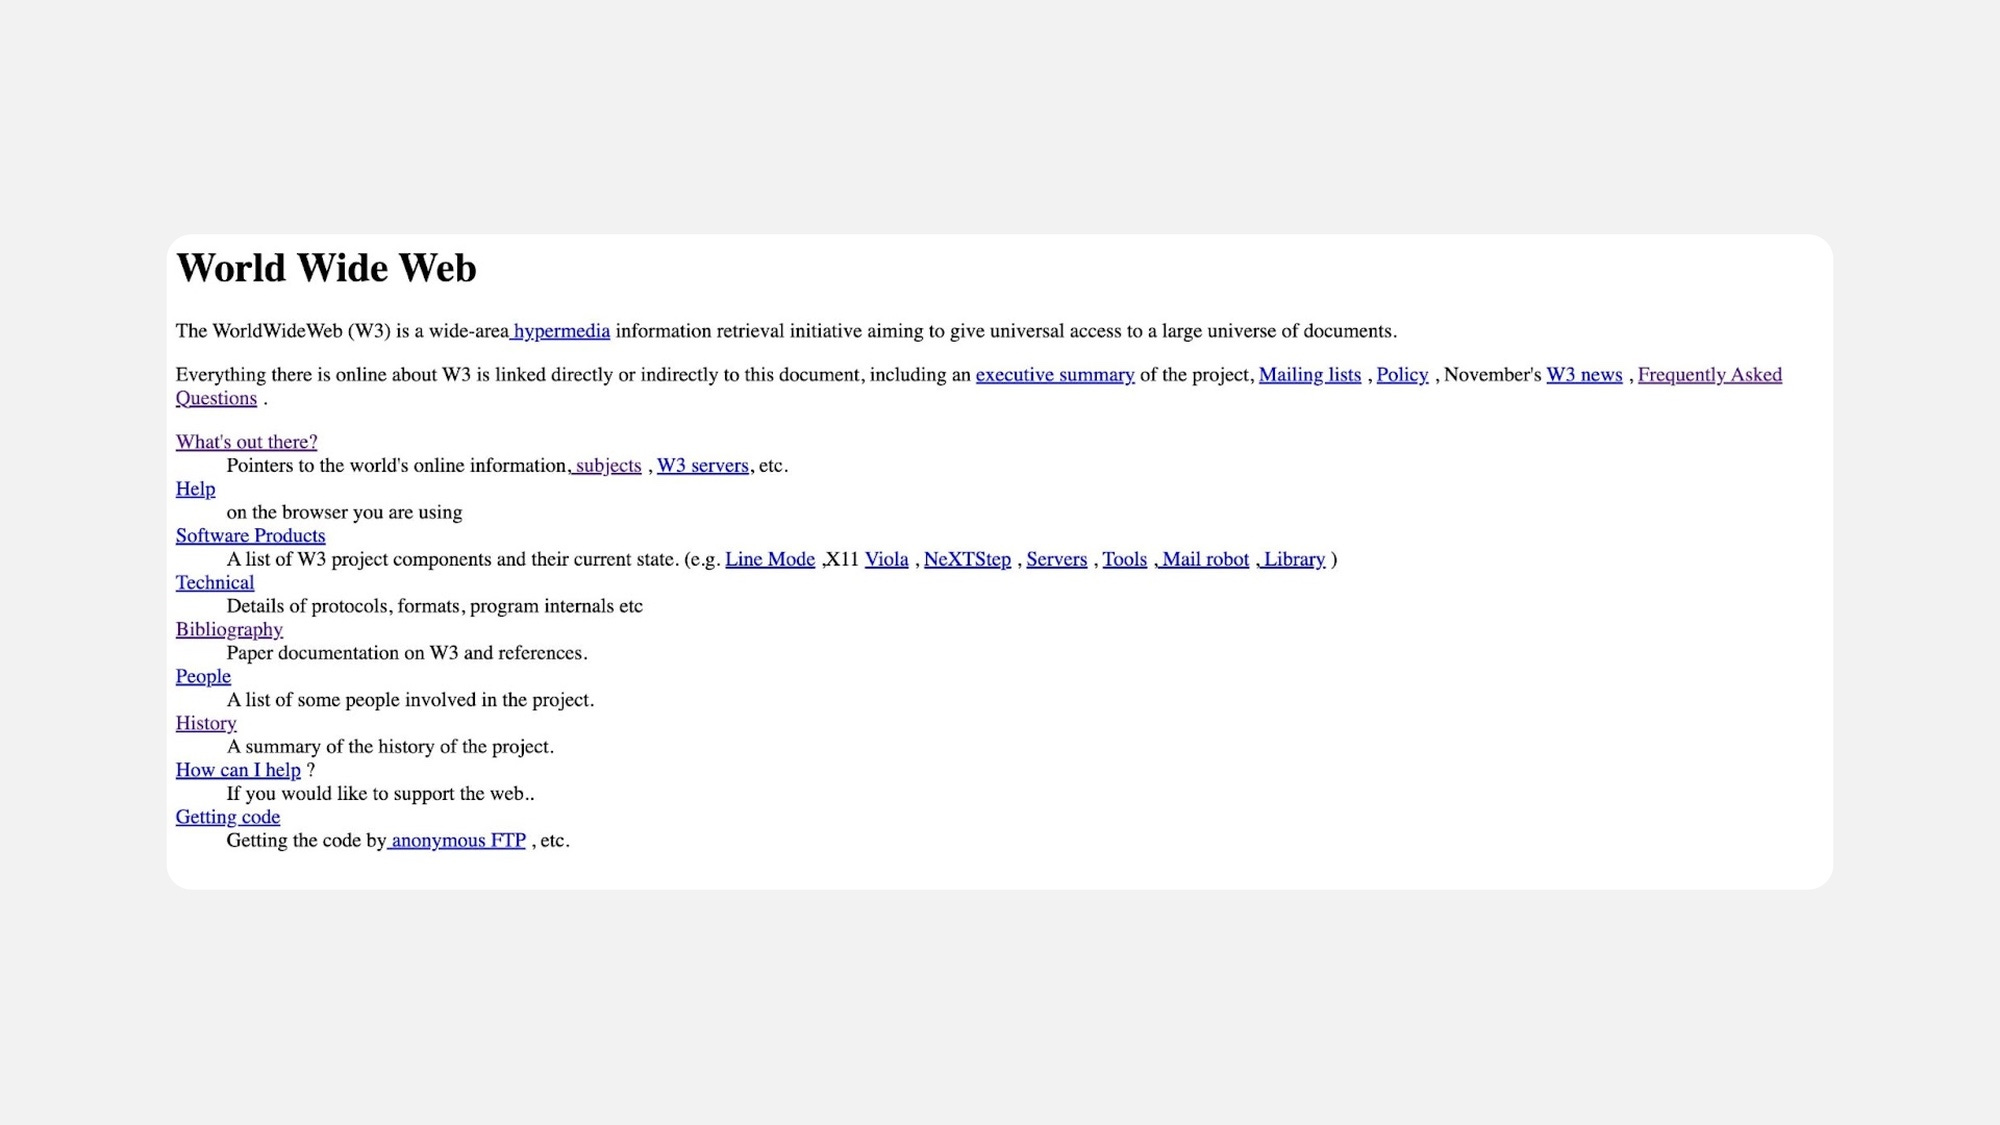 Screenshot of the World Wide Web website